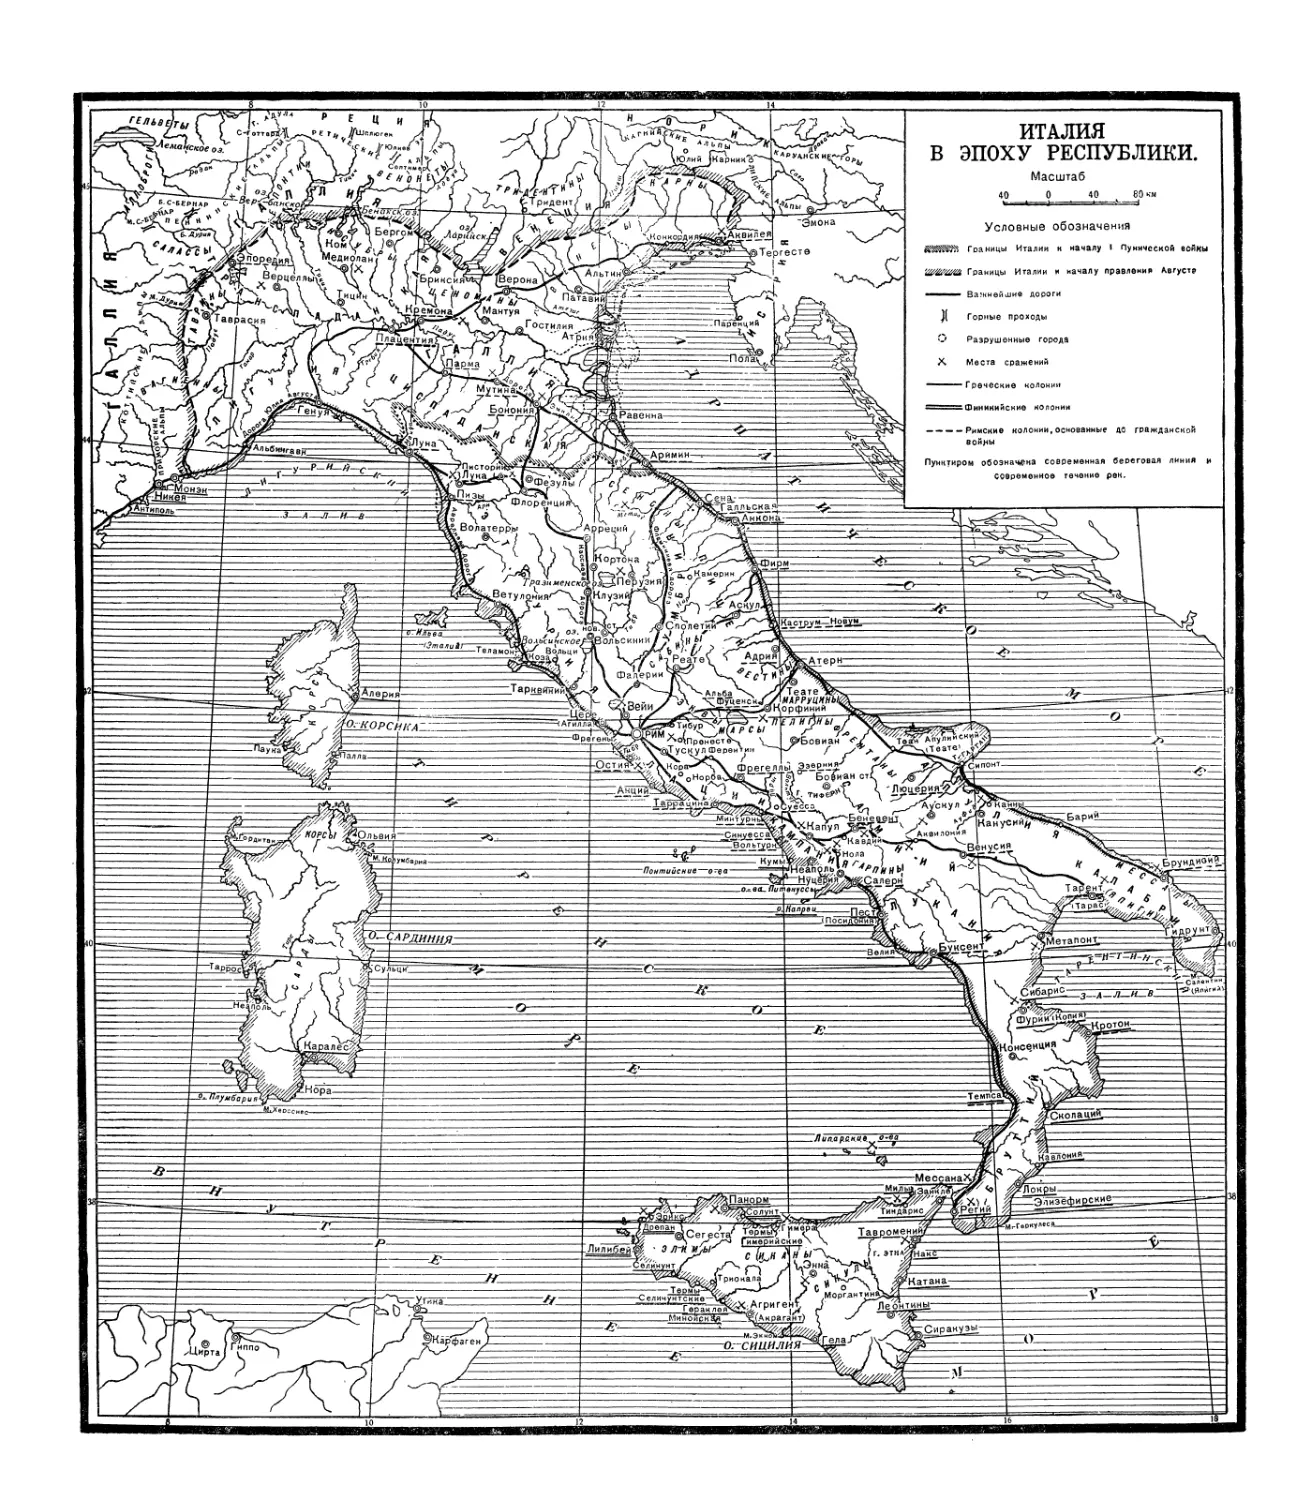 Вклейка. Карта Италии в эпоху республики